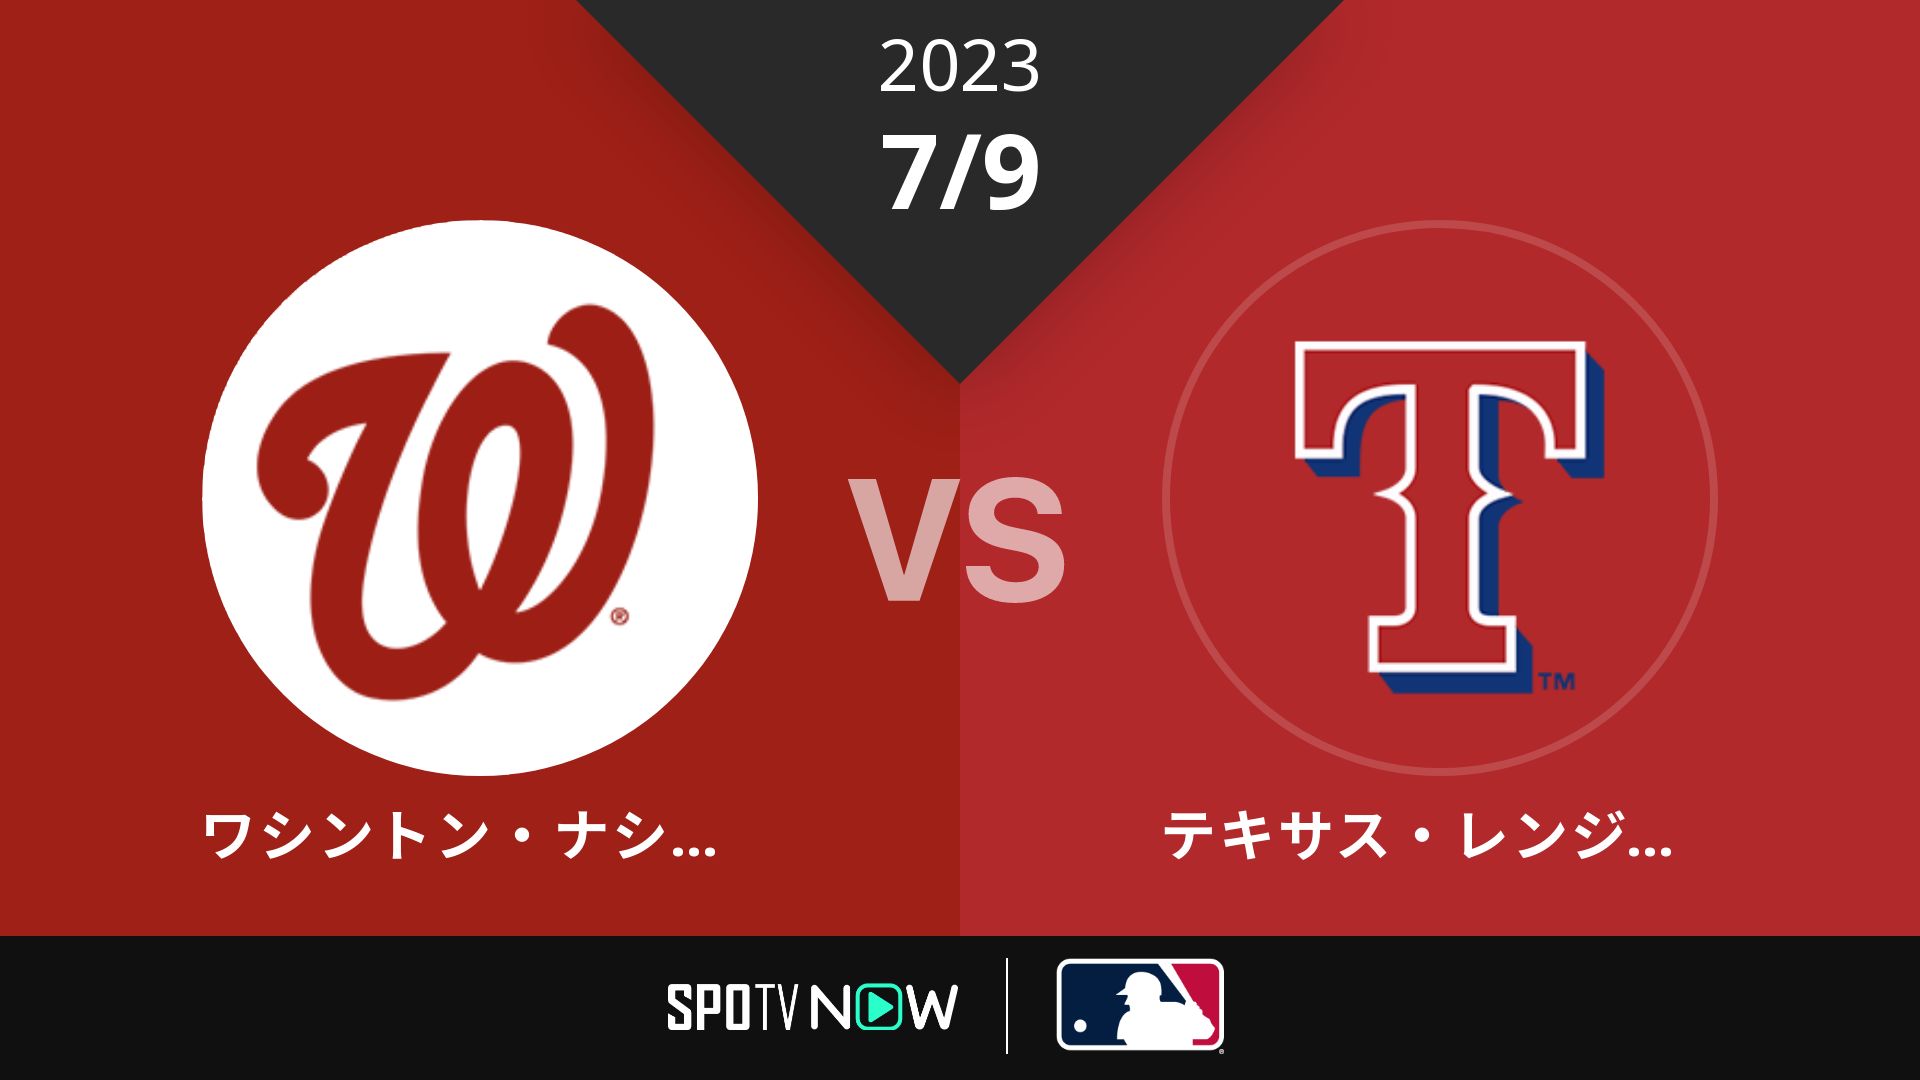 2023/7/9 ナショナルズ vs レンジャーズ [MLB]